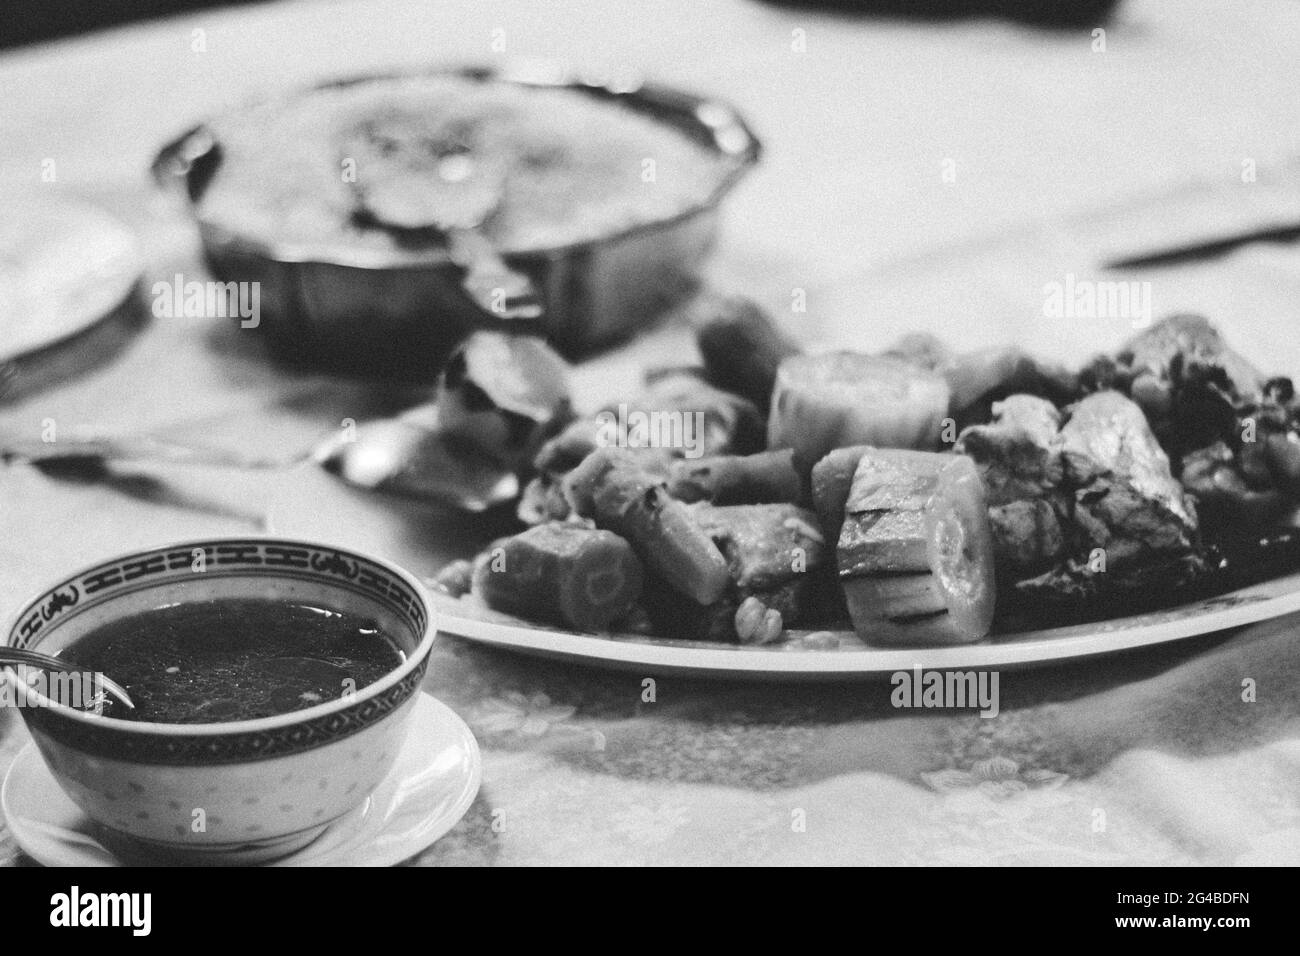 Essen am Tisch, exotisches Essen am Tisch bedeutet gesellschaftliche Veranstaltungen und Zusammenkünfte der Menschheit. Schwarzweiß-Food-Fotografie Stockfoto